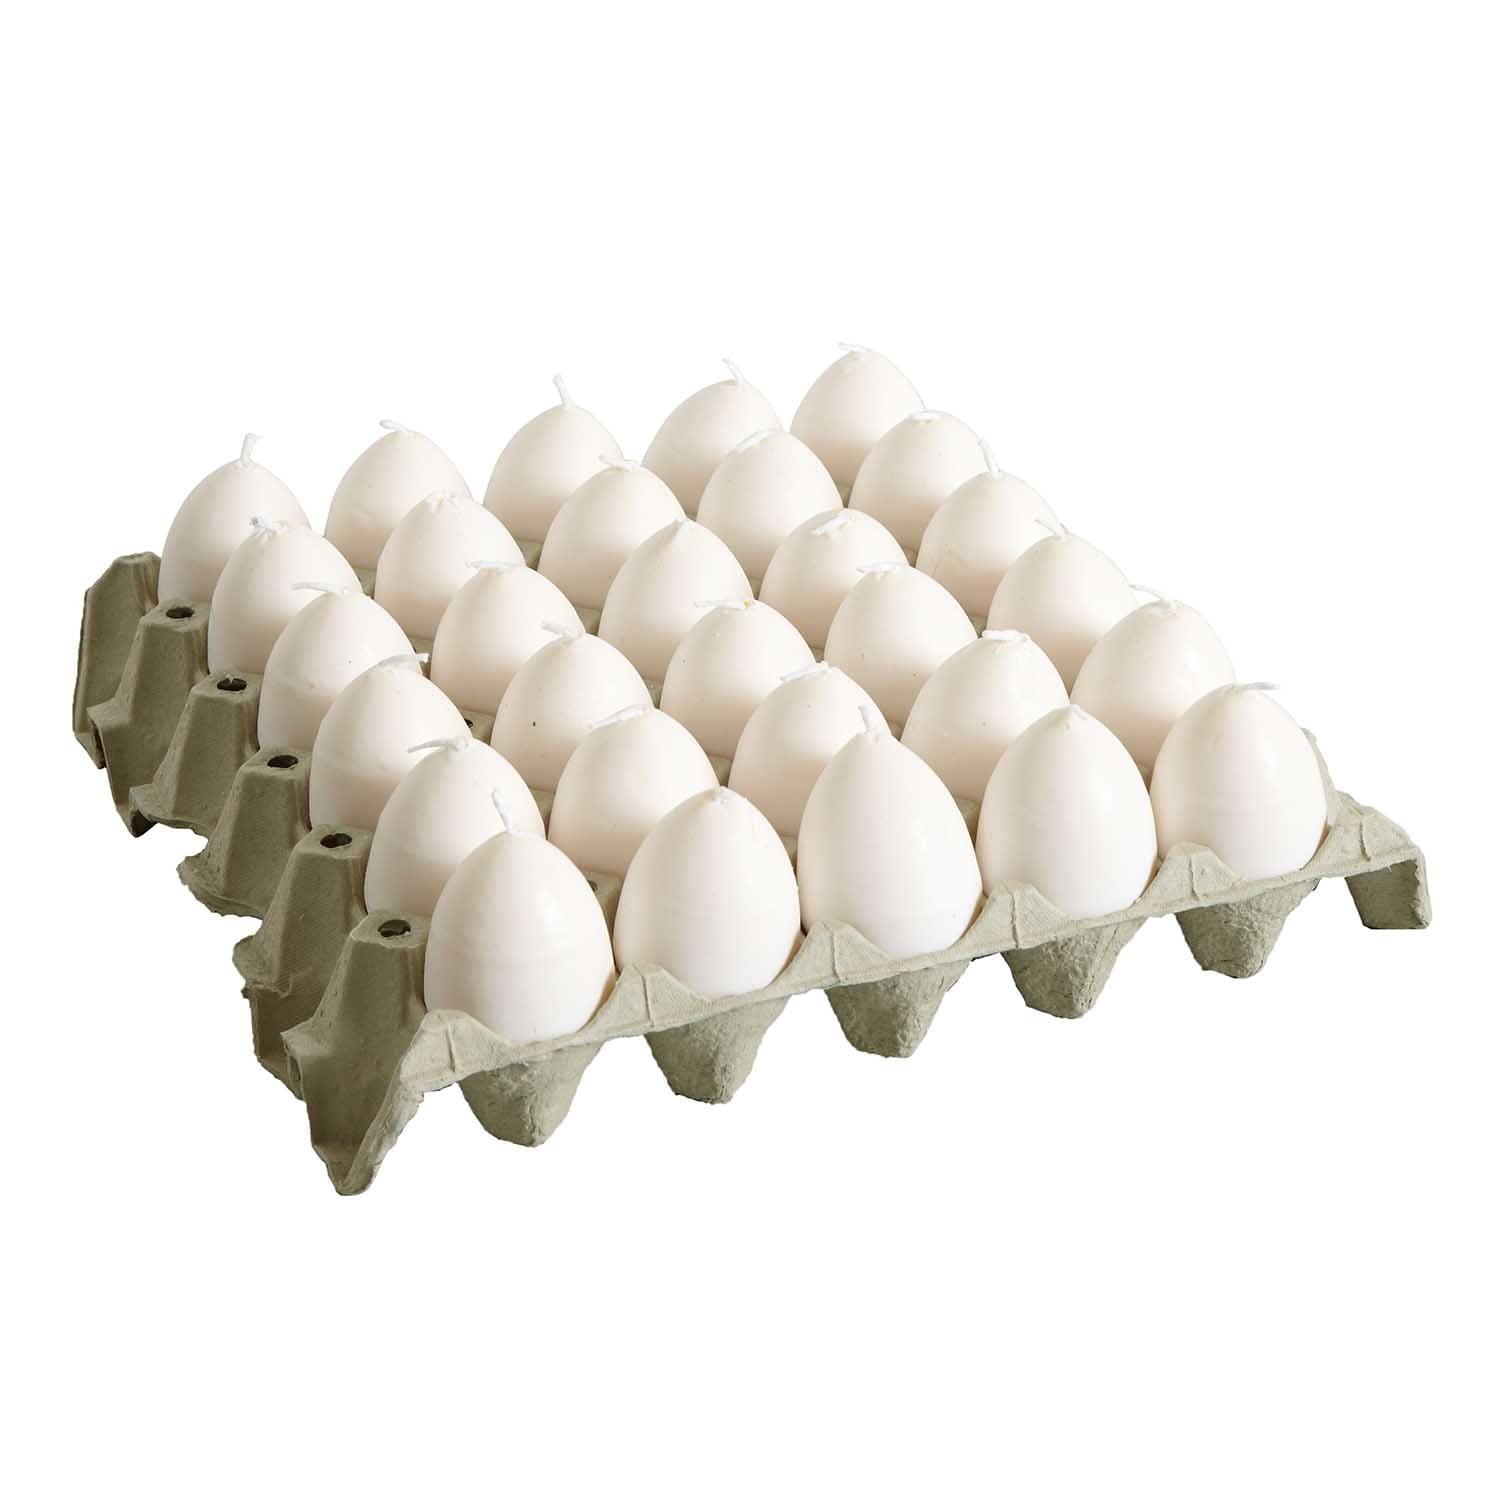 Äggkartong med vita äggformade ljus med gul insida